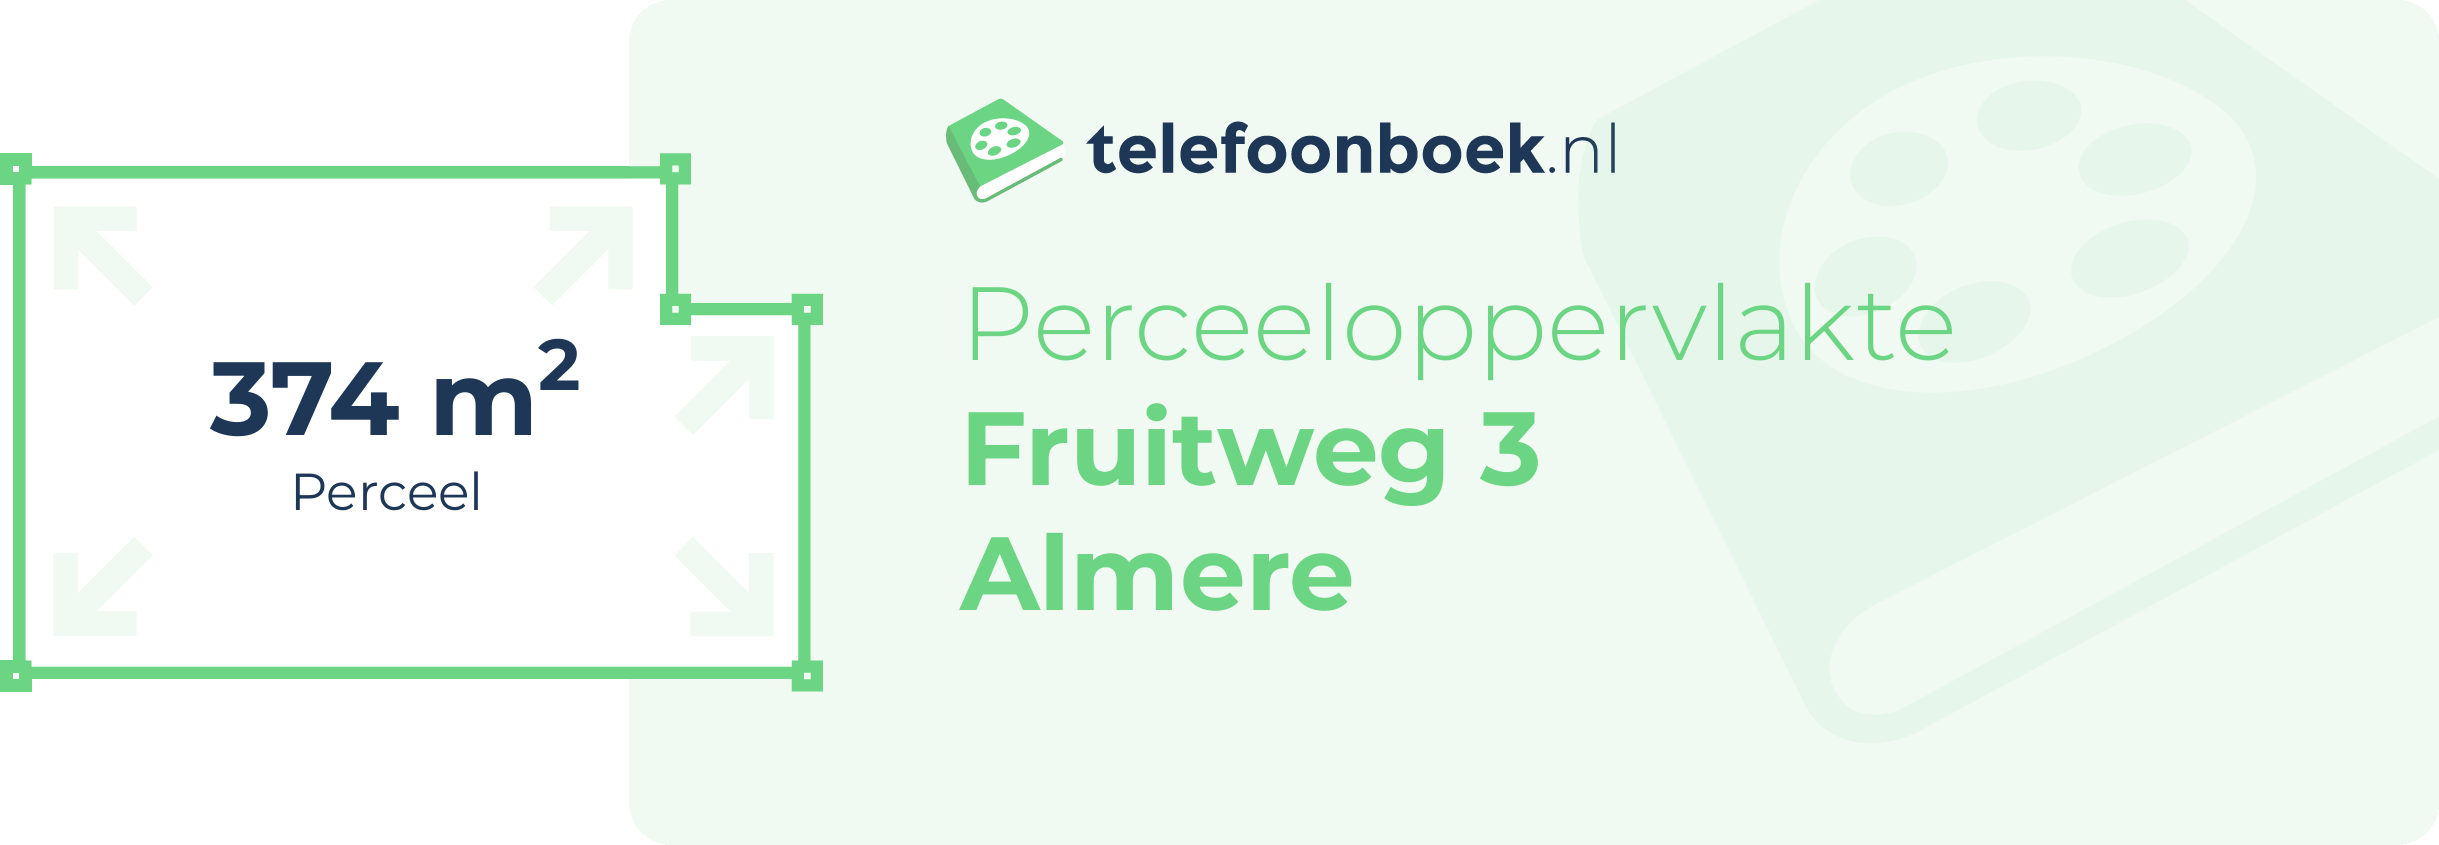 Perceeloppervlakte Fruitweg 3 Almere